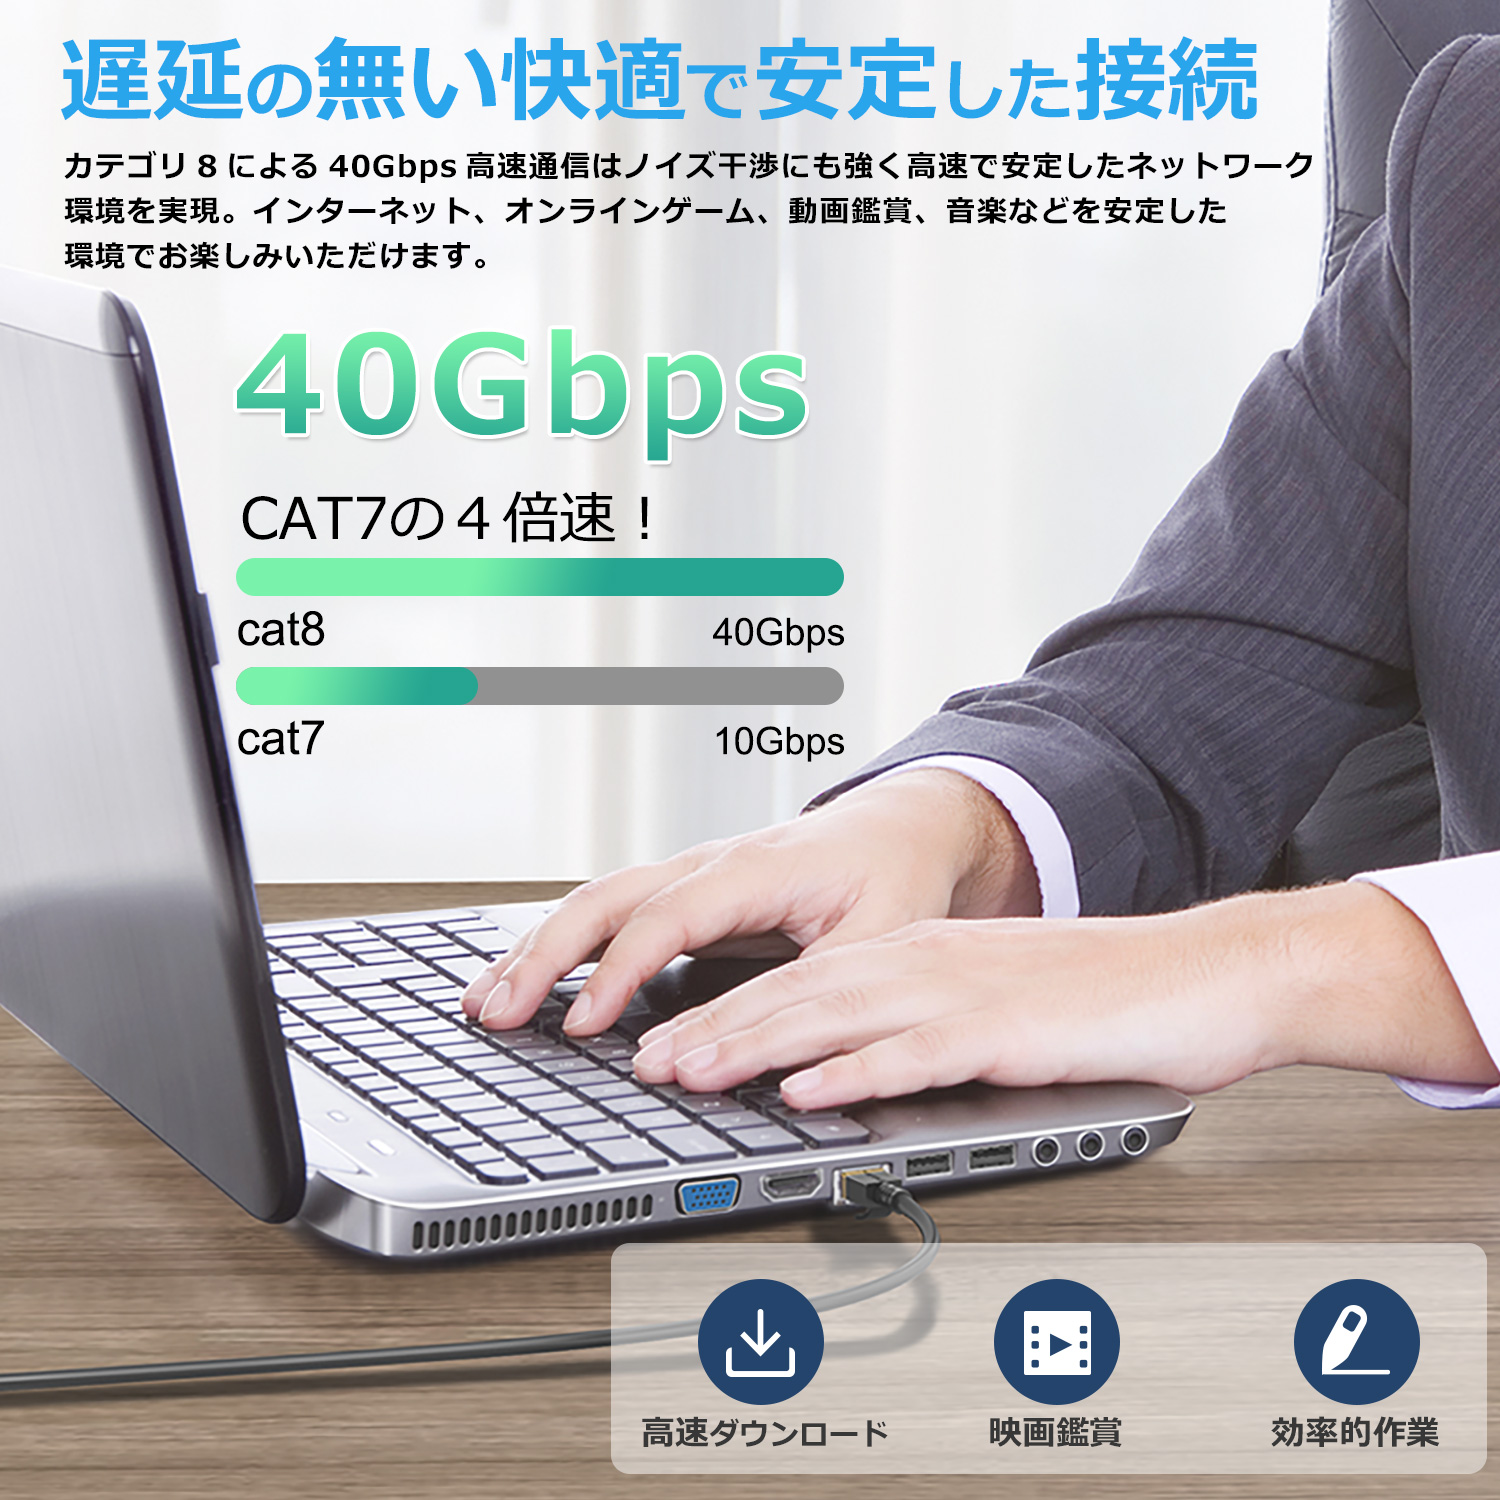  сегодня максимальный 600 иен скидка LAN кабель CAT8 40Gbps 2000MHz категория -8 Flat модель круг линия модель 0.2m/0.5m/1m/2m/3m/5m/8m/10m/15m/20m/30m ec8-f-r бесплатная доставка 